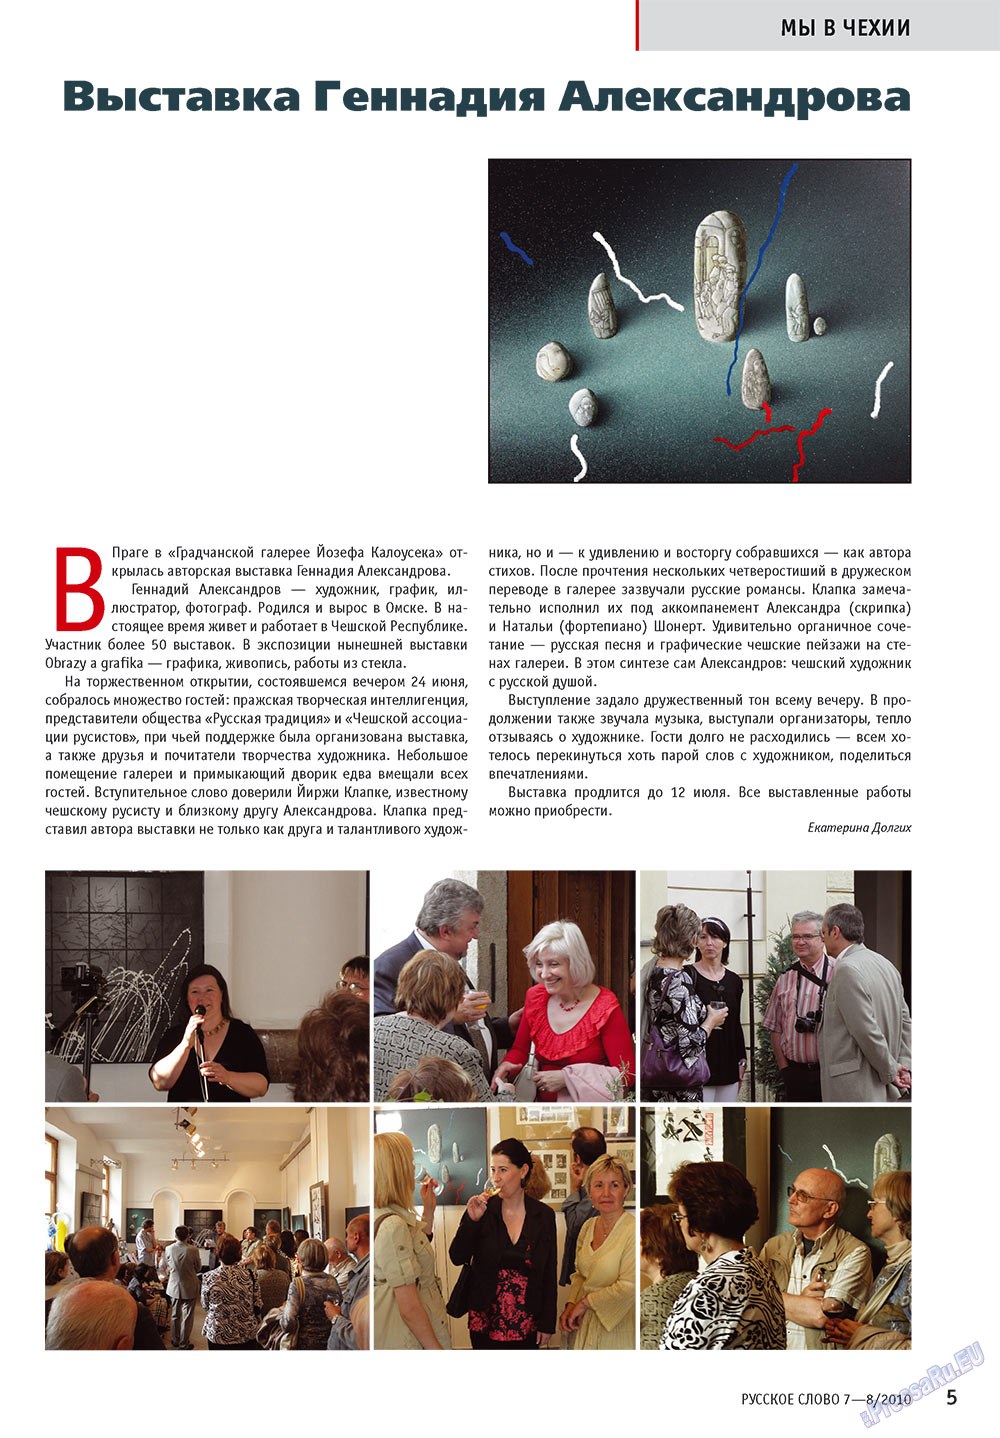 Русское слово, журнал. 2010 №7 стр.7